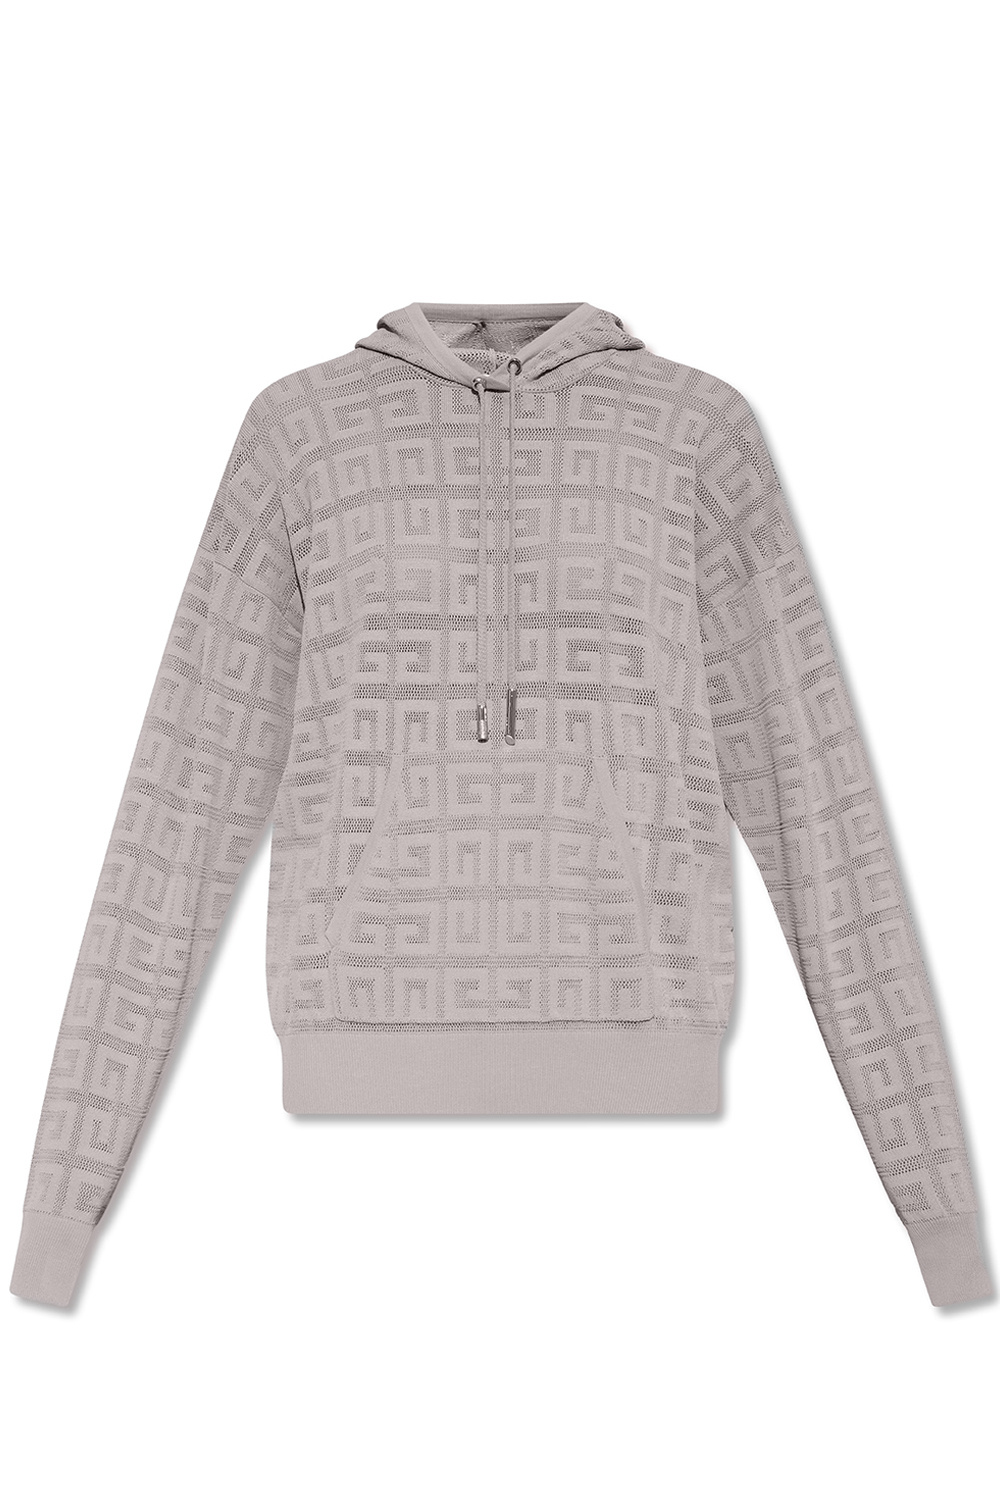 Givenchy Openwork sweatshirt